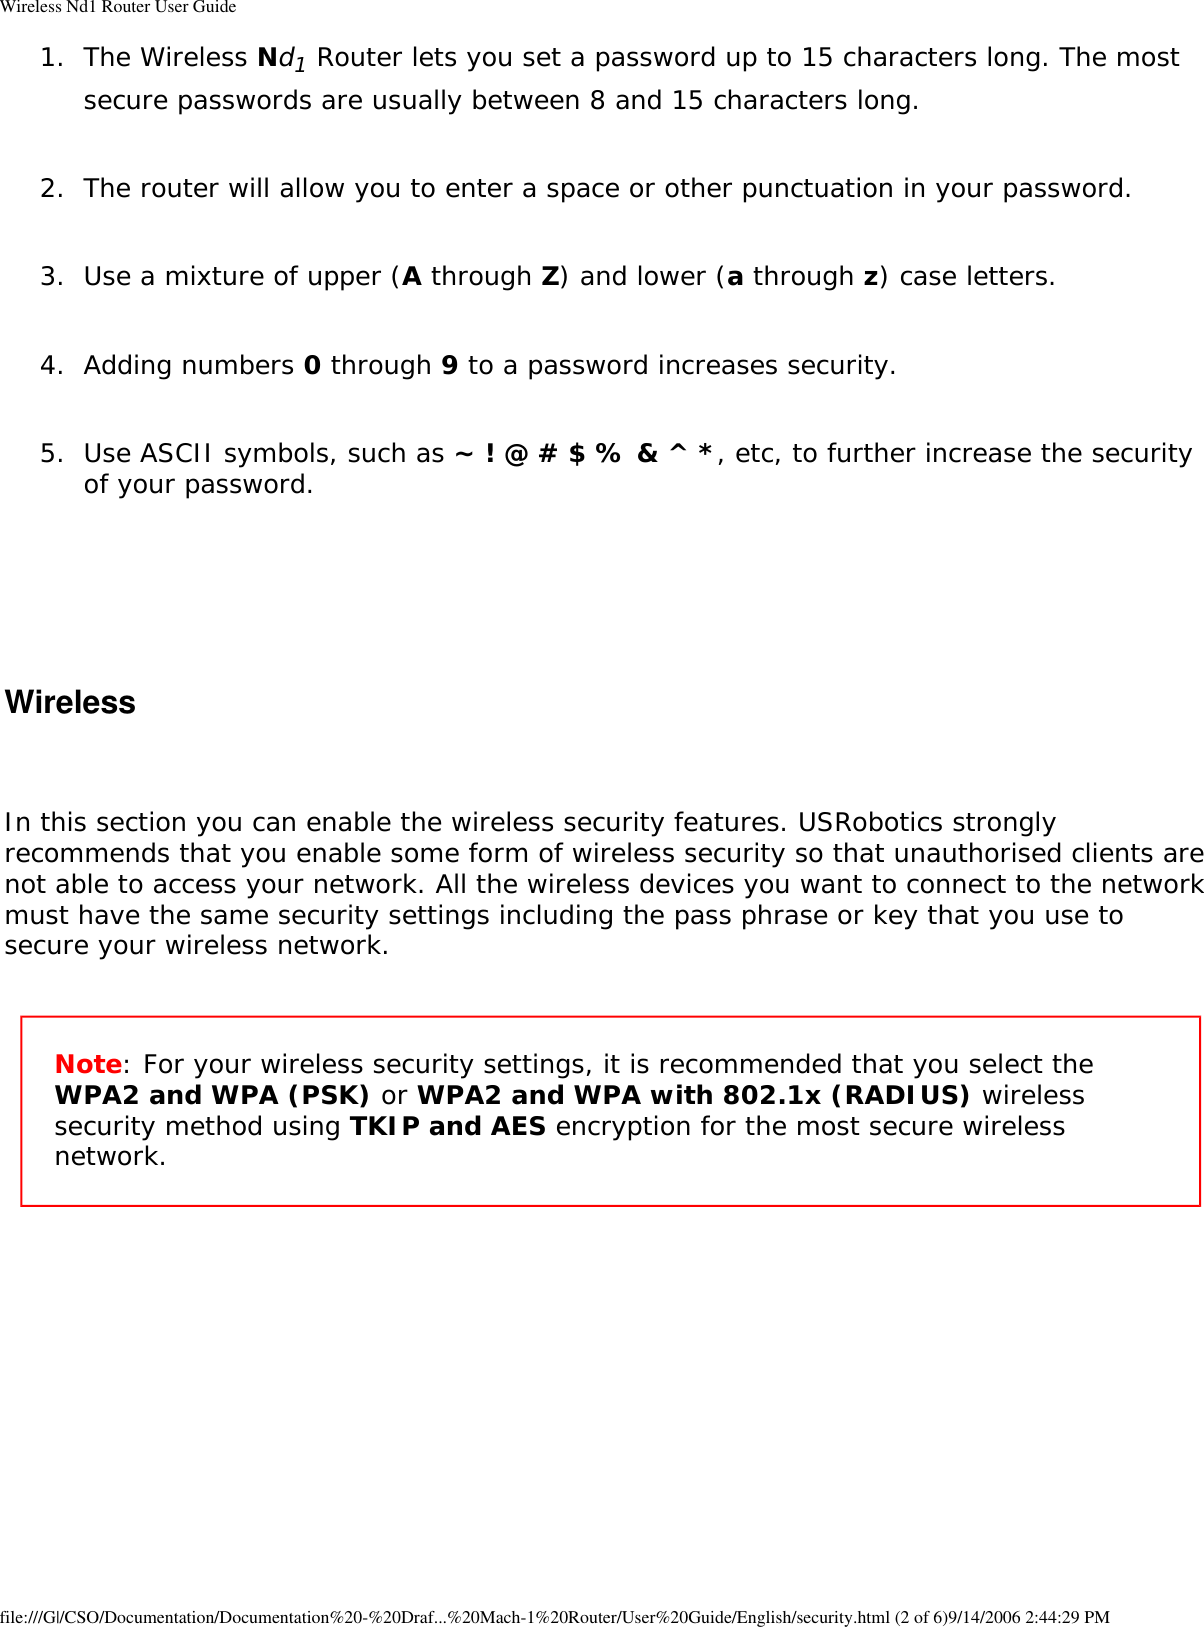 Page 17 of GemTek Technology R950630GN USRobotics Wireless Nd1 Router User Manual Wireless Nd1 Router User Guide